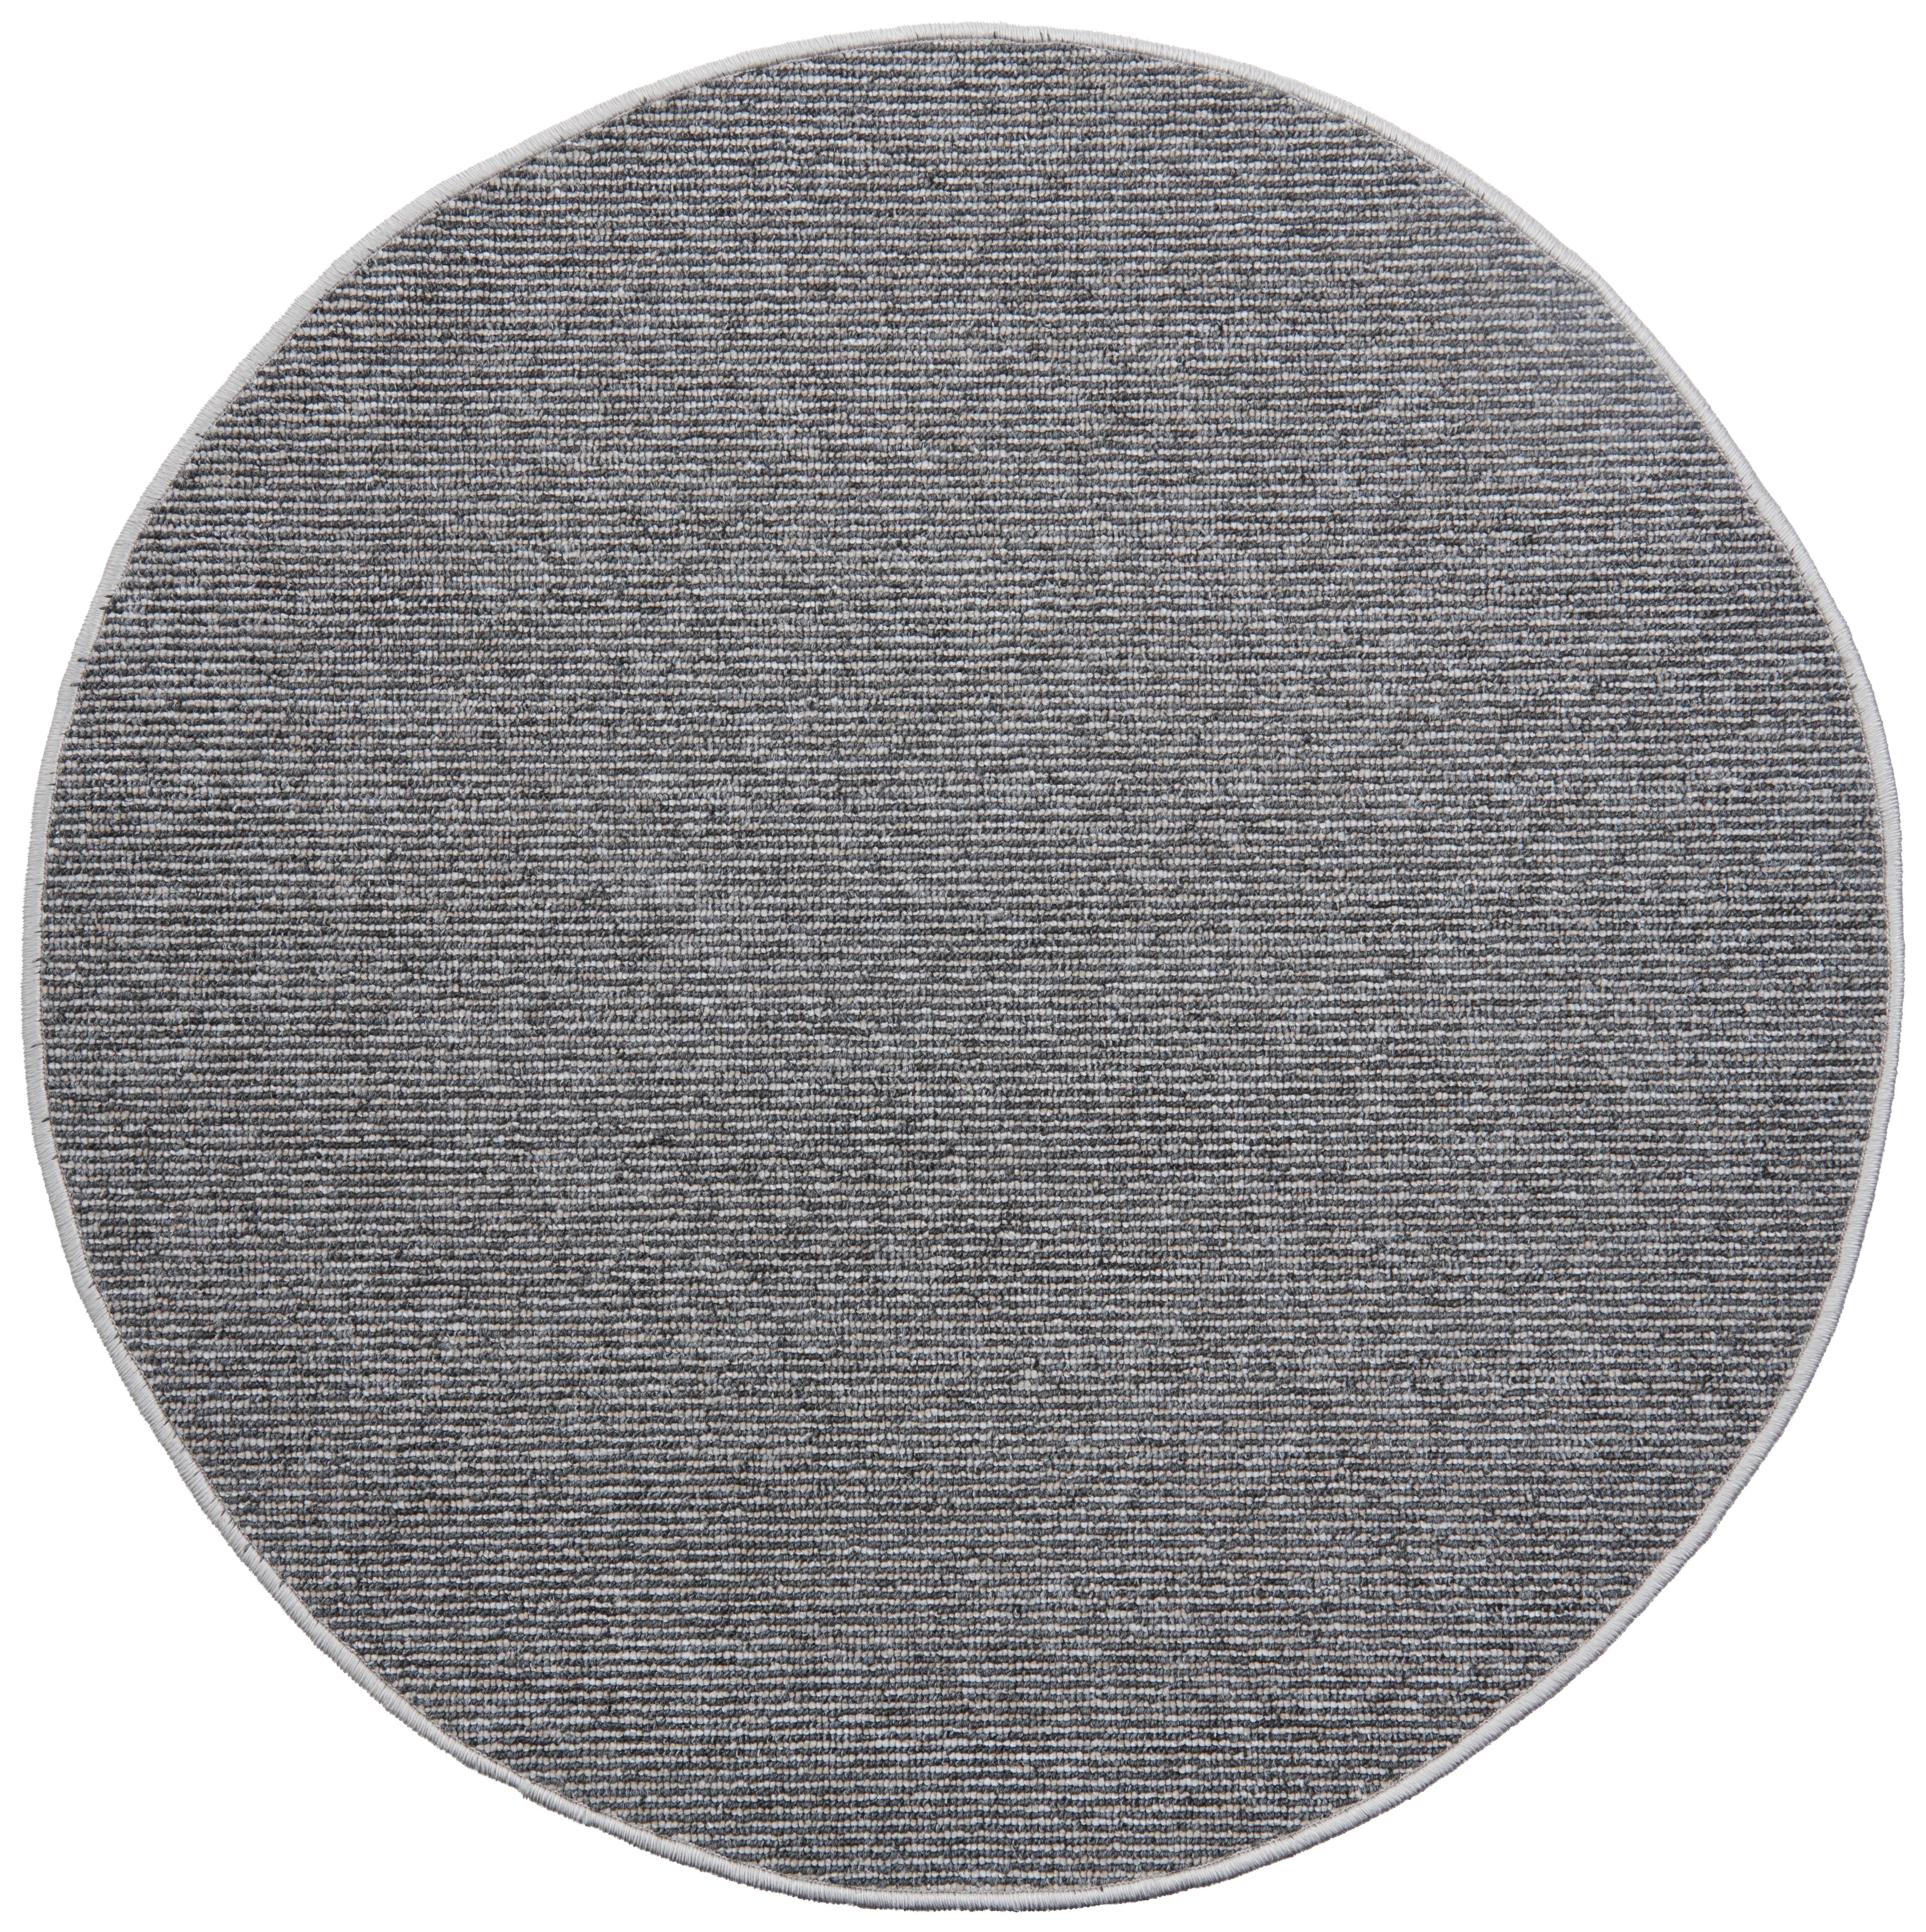 Koberec Tkaný Na Plocho Alex 1, P: 80cm - šedá, Konvenční, textil (80cm) - Modern Living